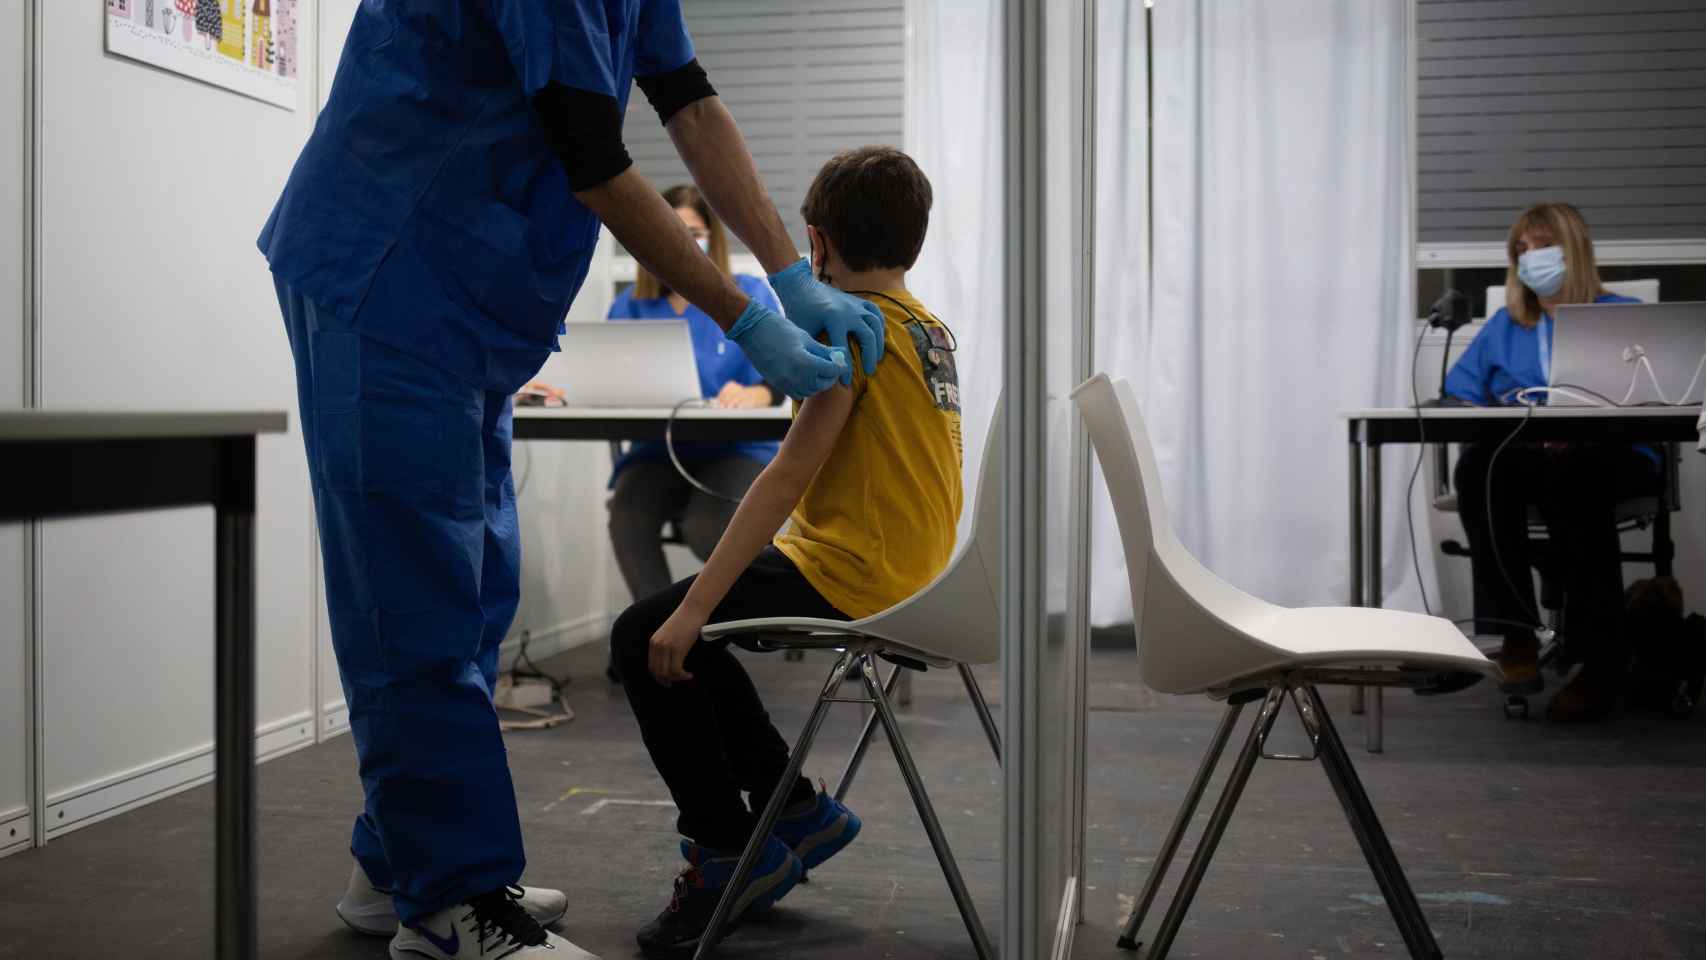 Un niño recibe la vacuna contra el Covid-19 en España. Efe